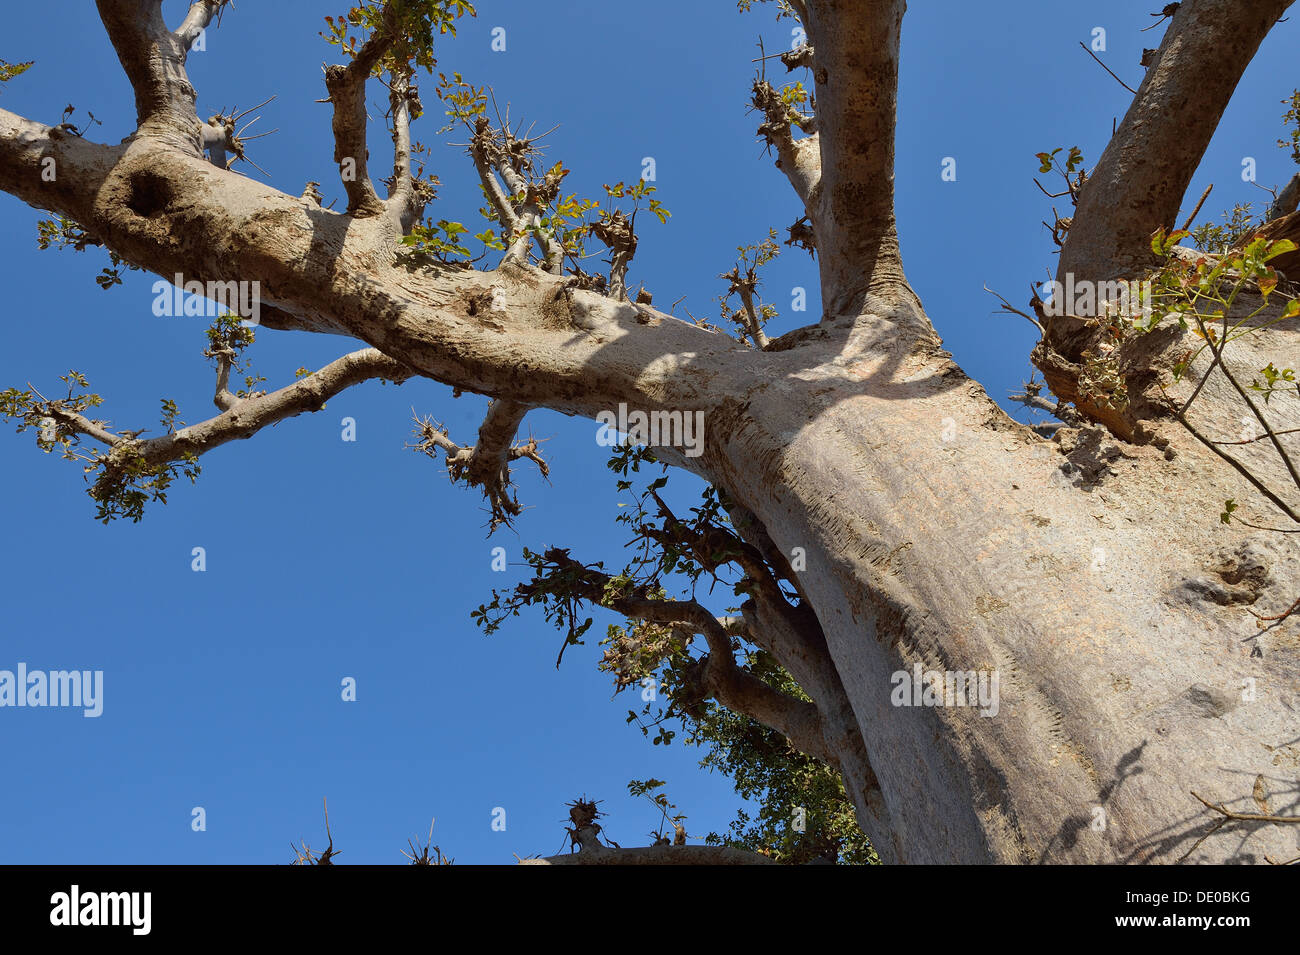 Baobab - Dead-rata árbol - árbol de pan de mono - árbol al revés (Adansonia digitata) cerca de la reserva de Bandia Foto de stock